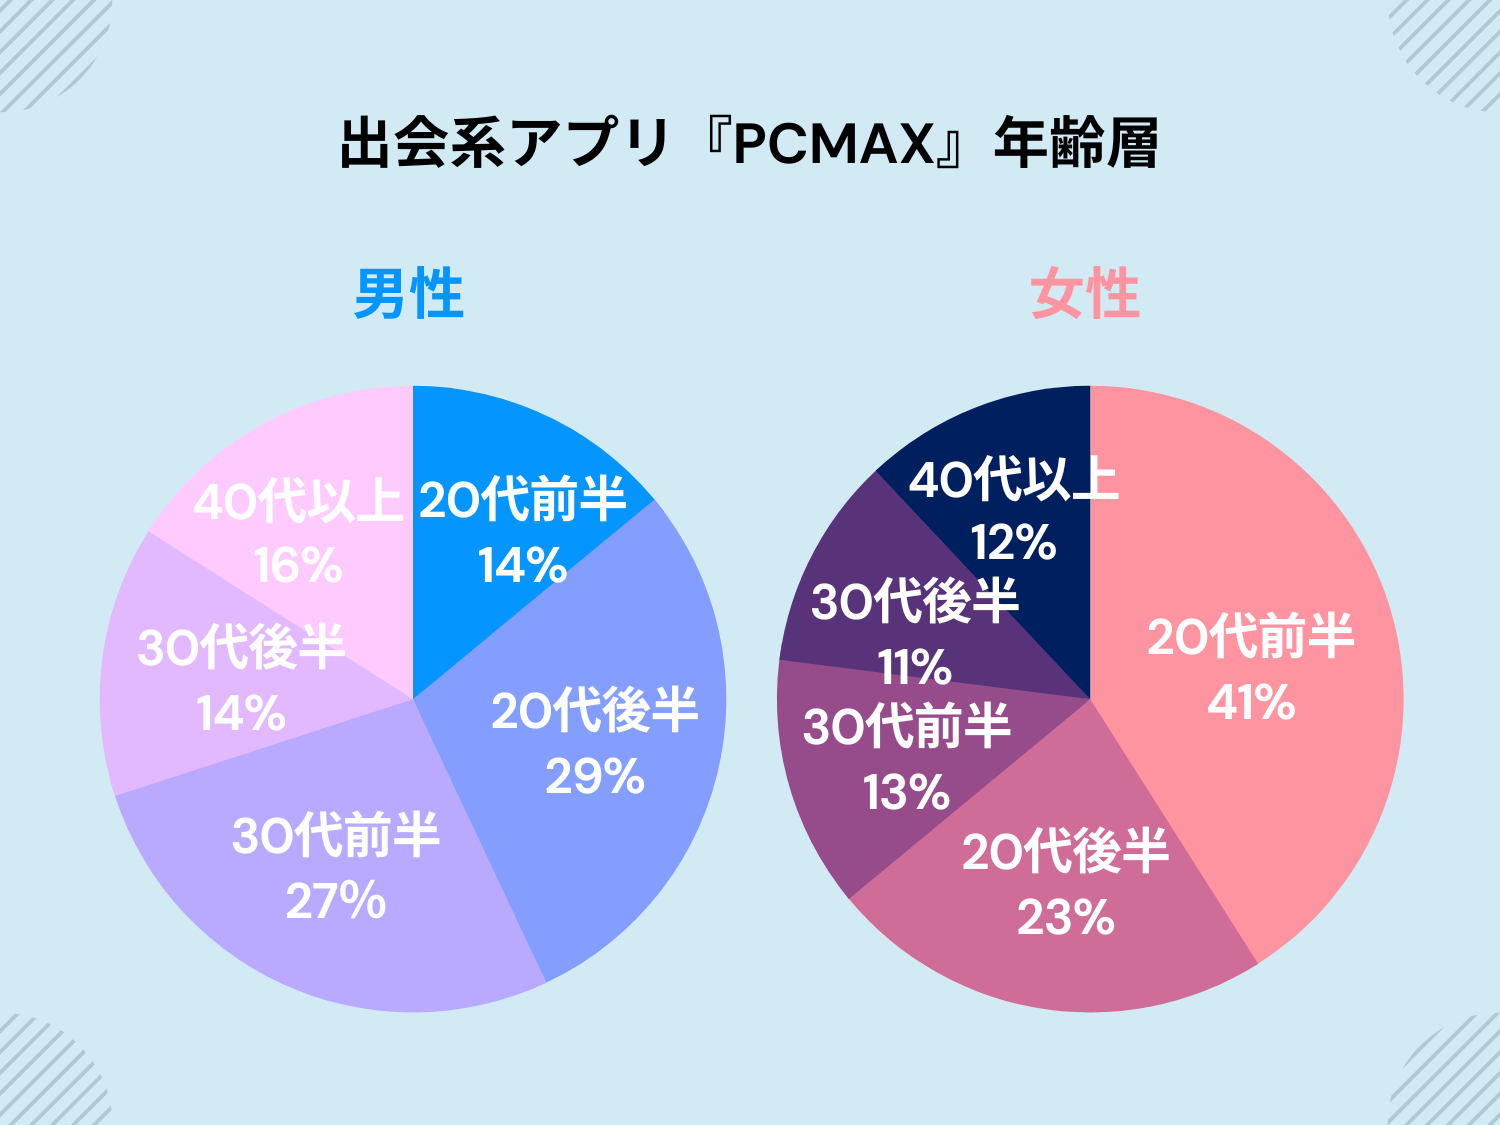 PCMAXの年齢層